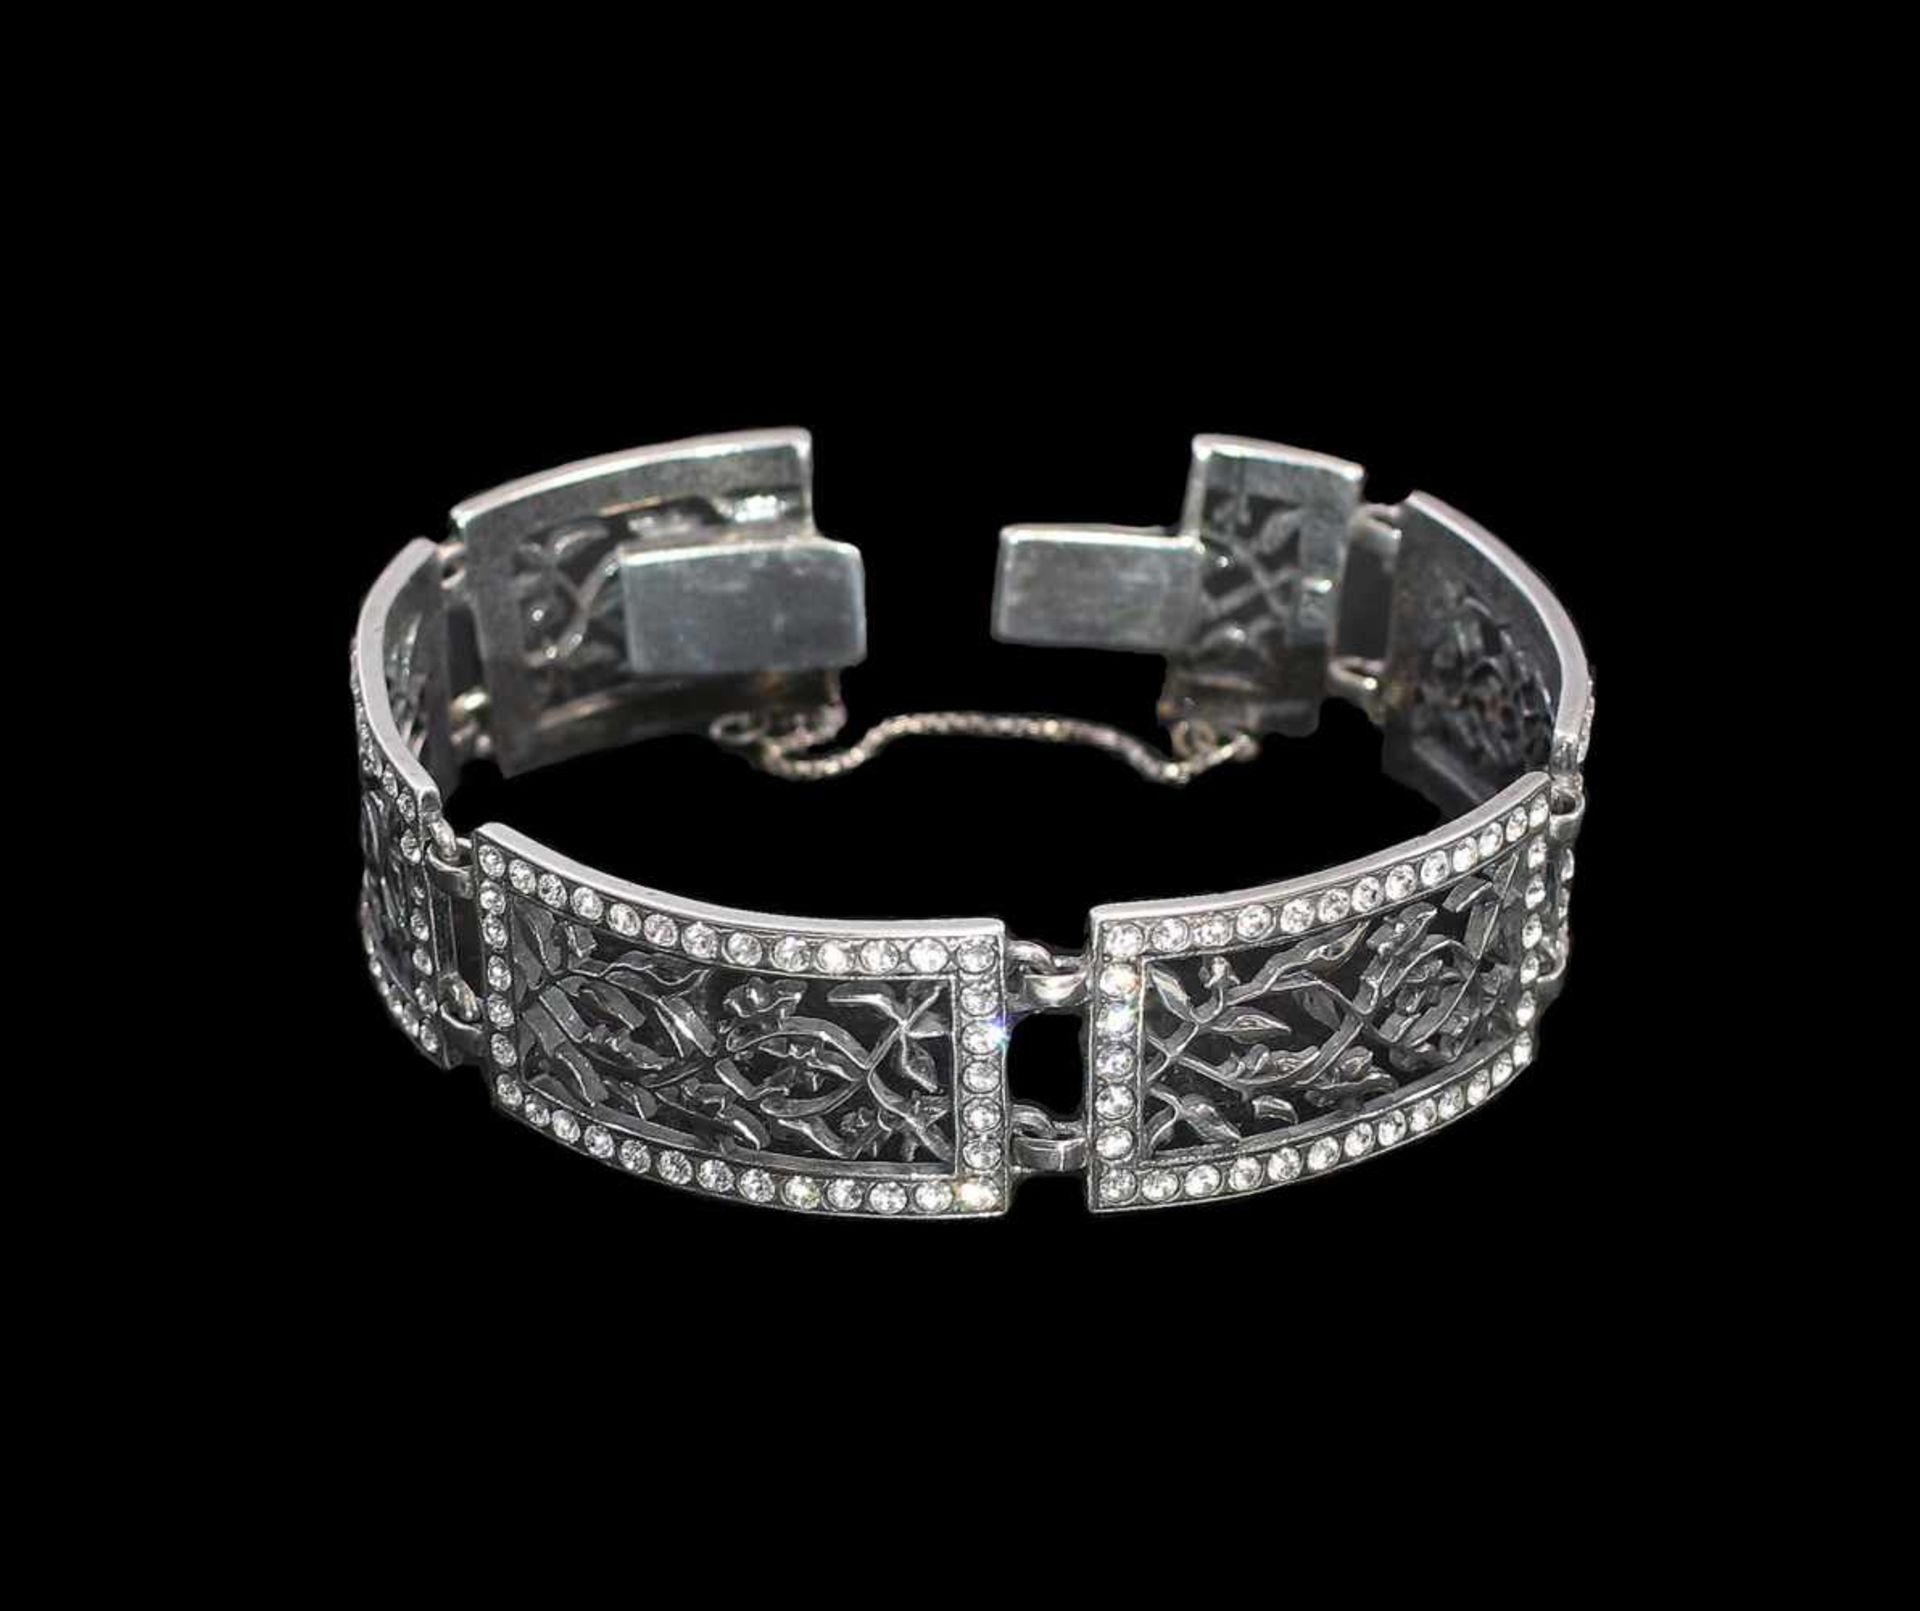 Jugendstil-Armband mit Swarovski-Steinen 925er Silber, Fertigung nach historischem Vorbild, - Bild 2 aus 2